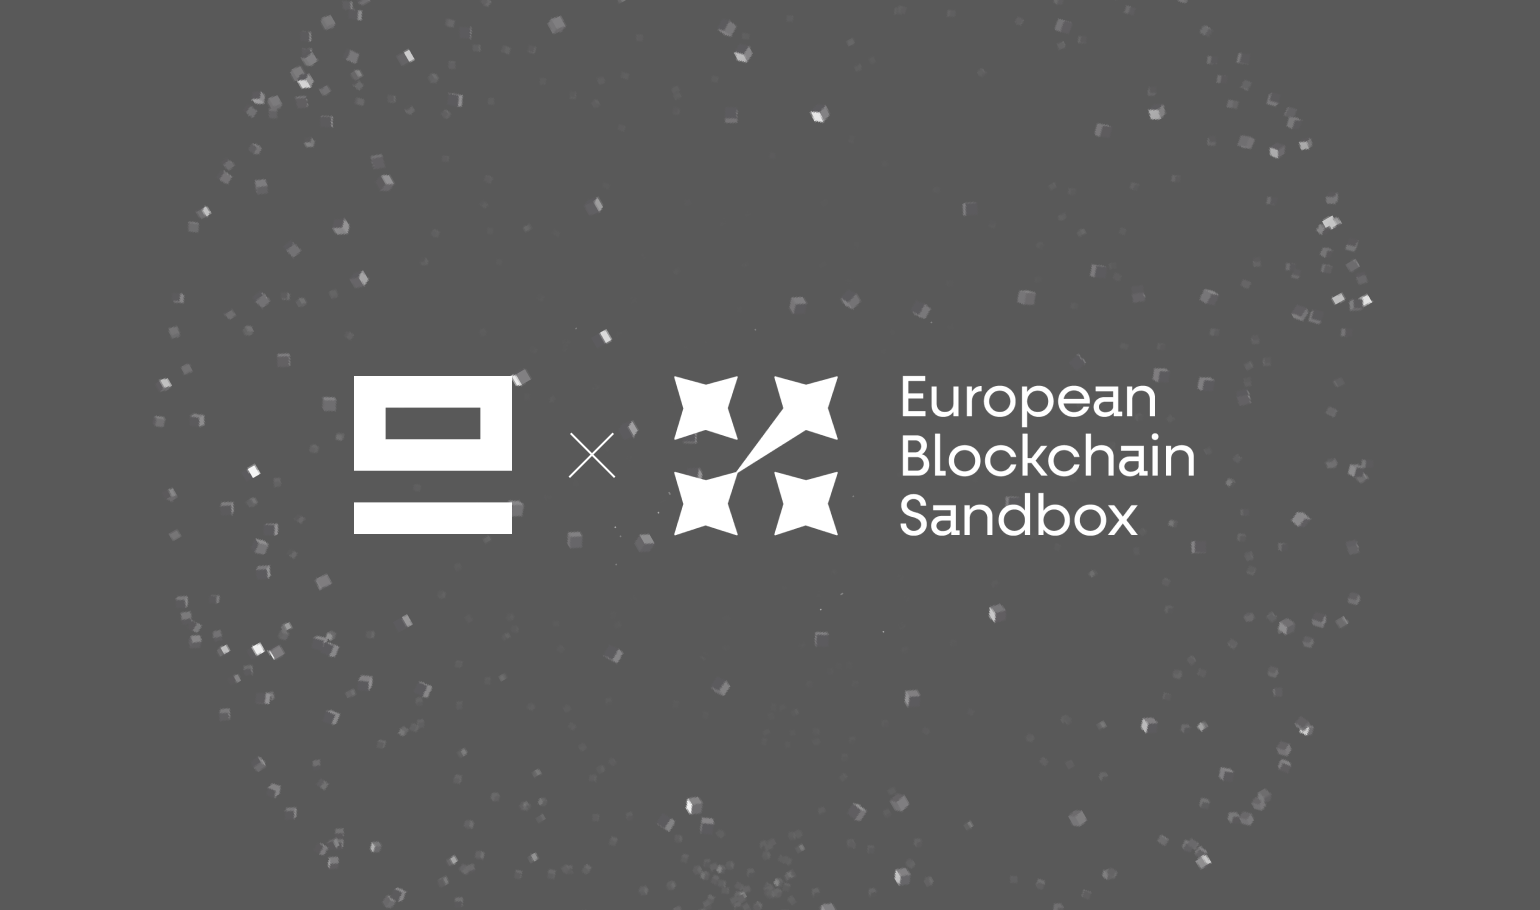 EQ - European Blockchain Sandbox